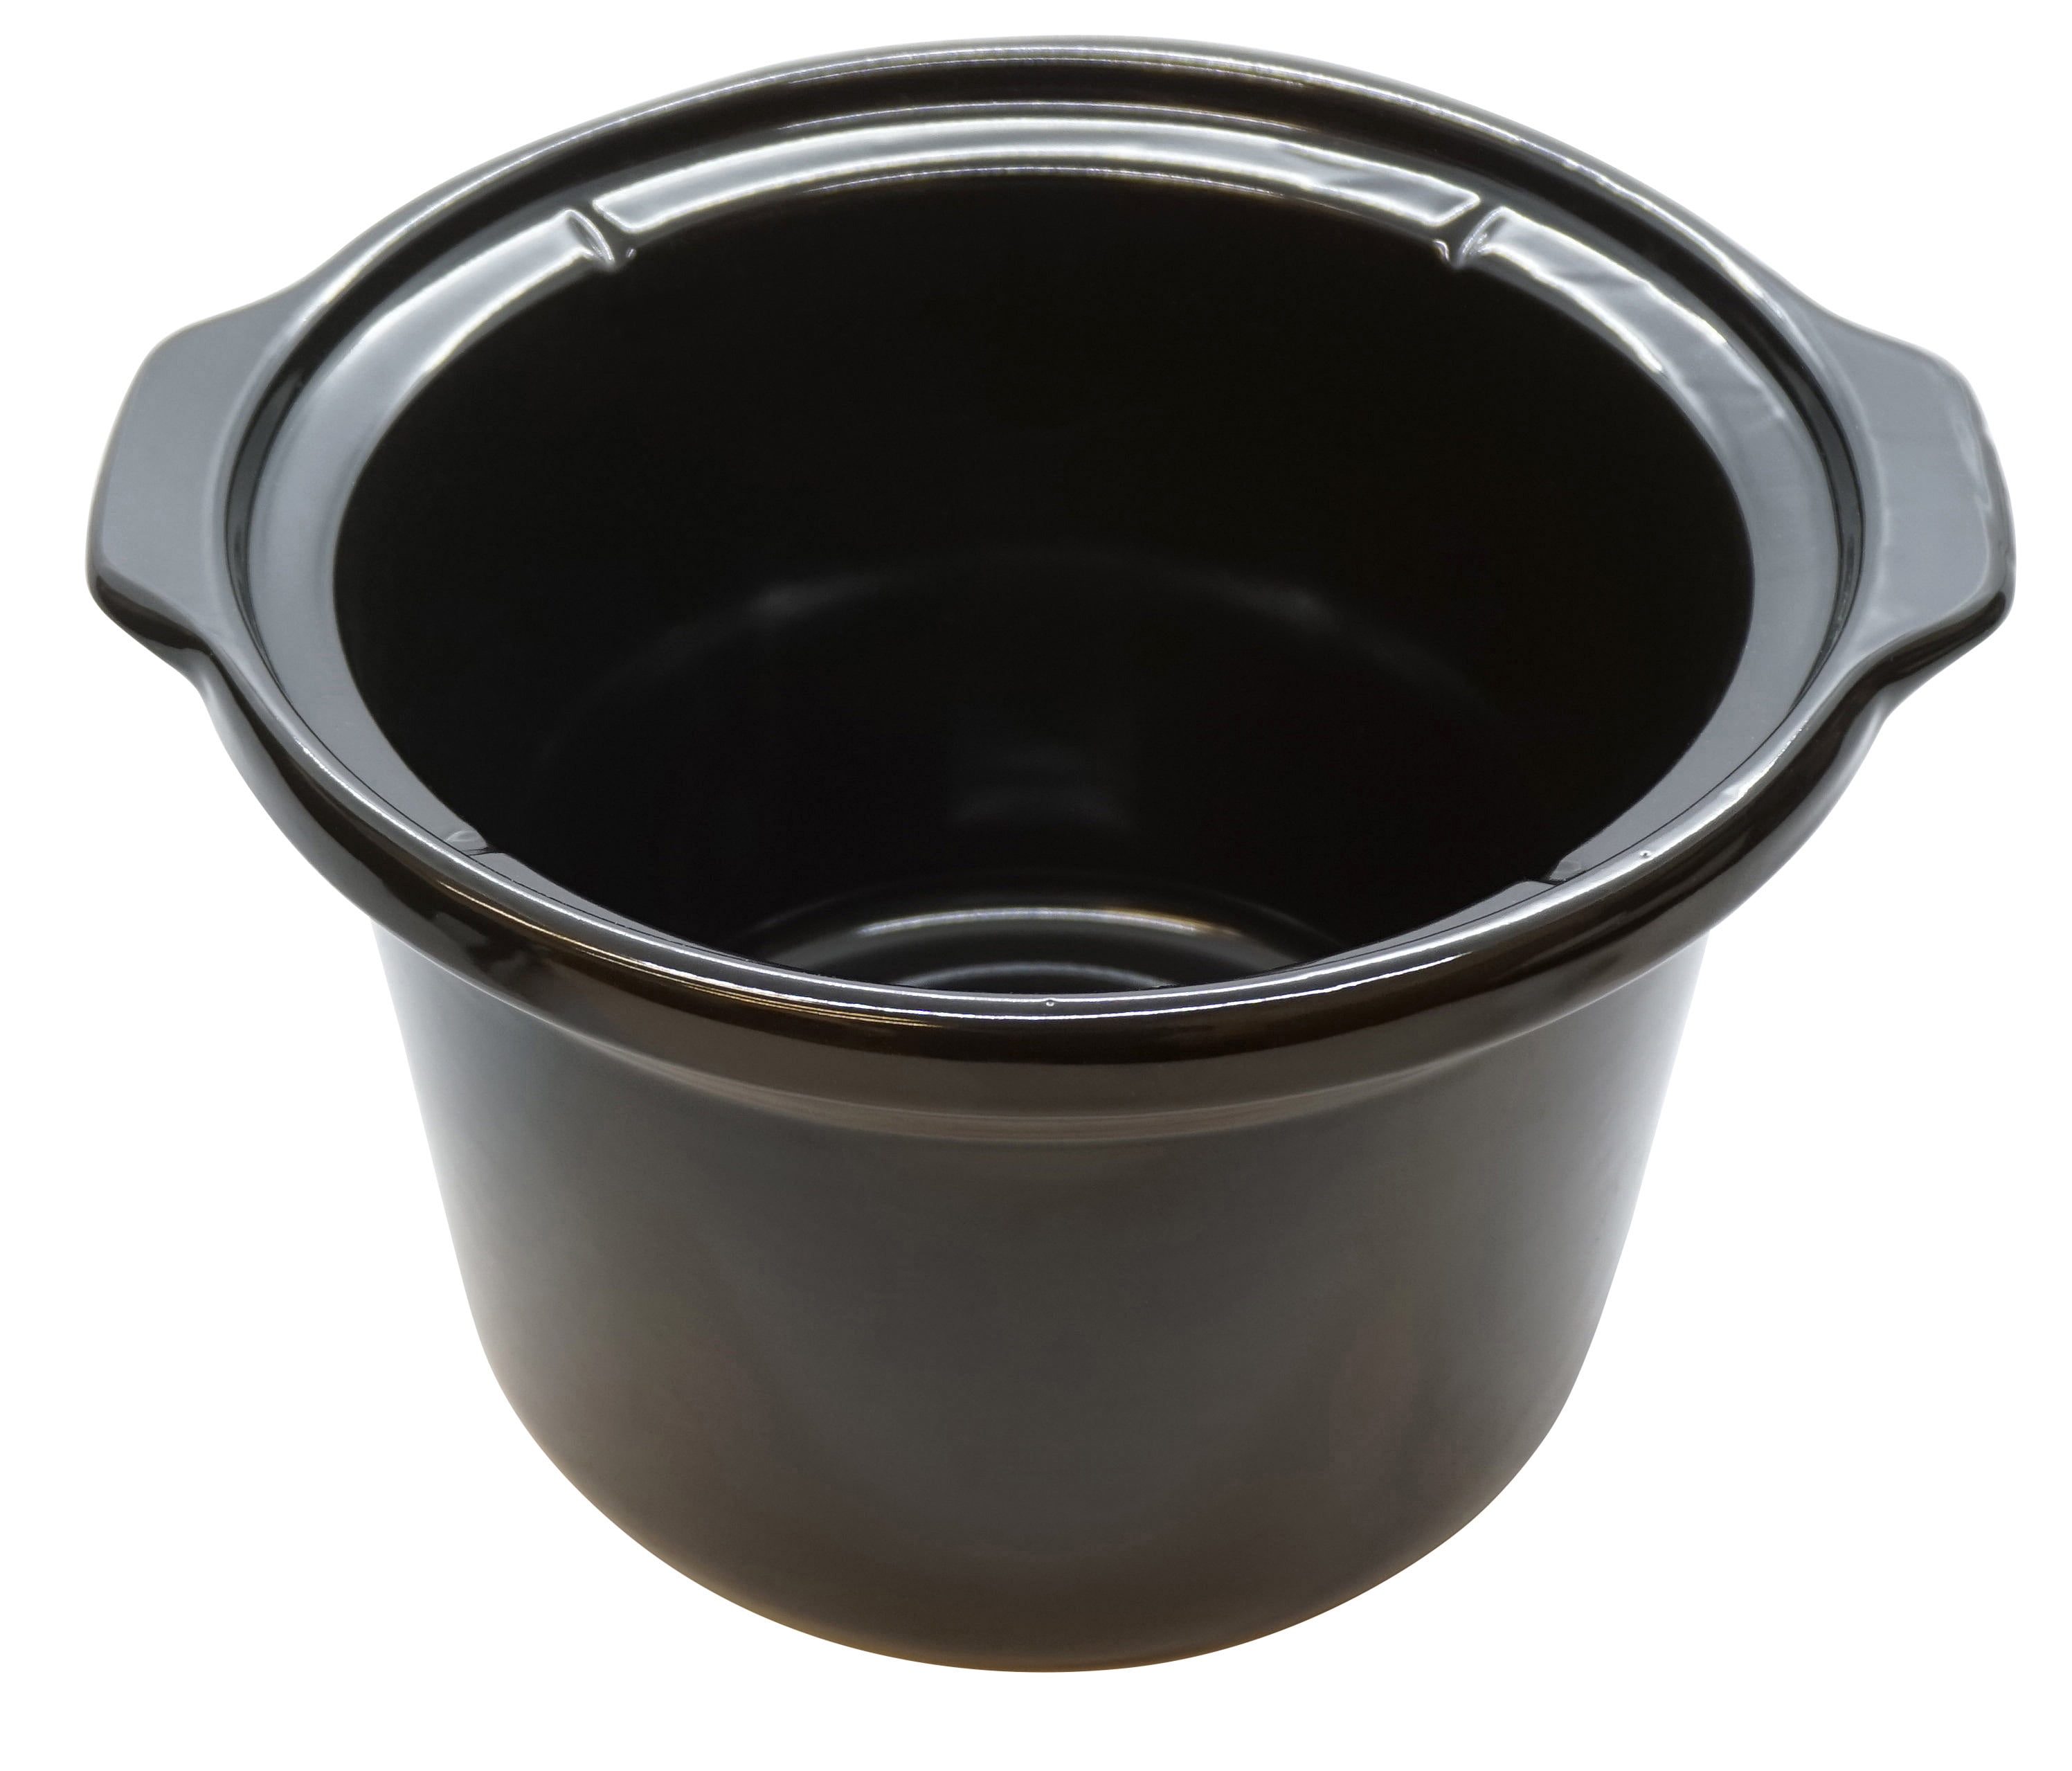 Crock Pot Replacement Stoneware : Target